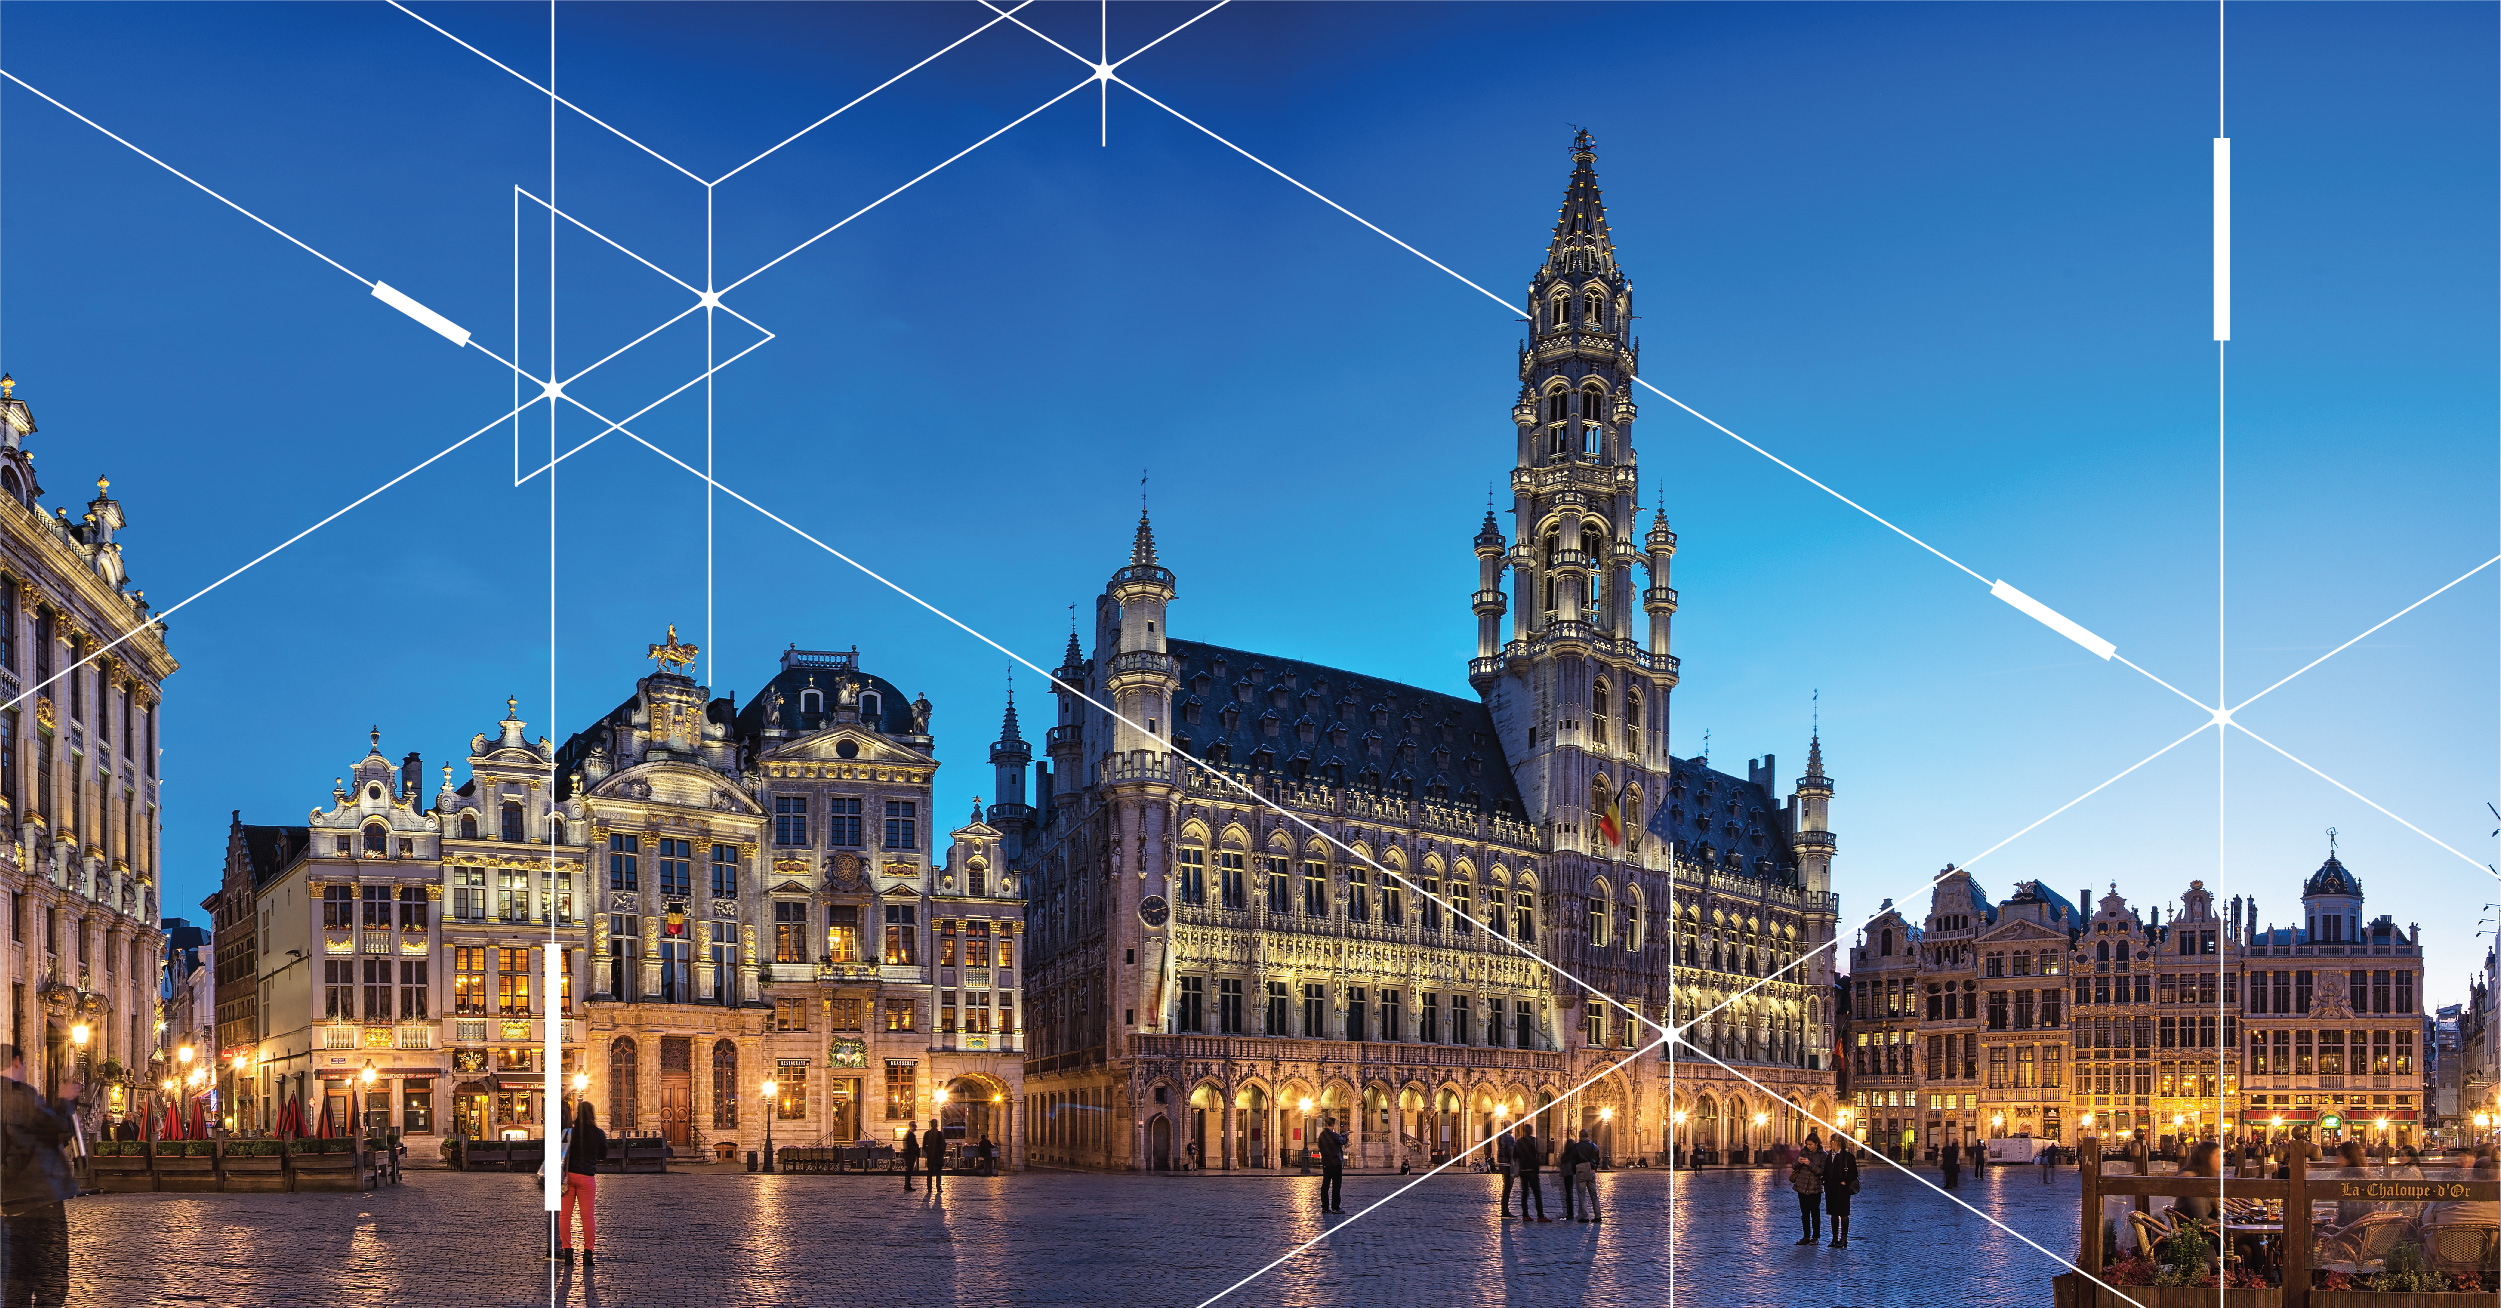 inteliLIGHT va furniza soluția sa de iluminat inteligent pentru un proiect de iluminat public pe o perioadă de 10 ani în Bruxelles